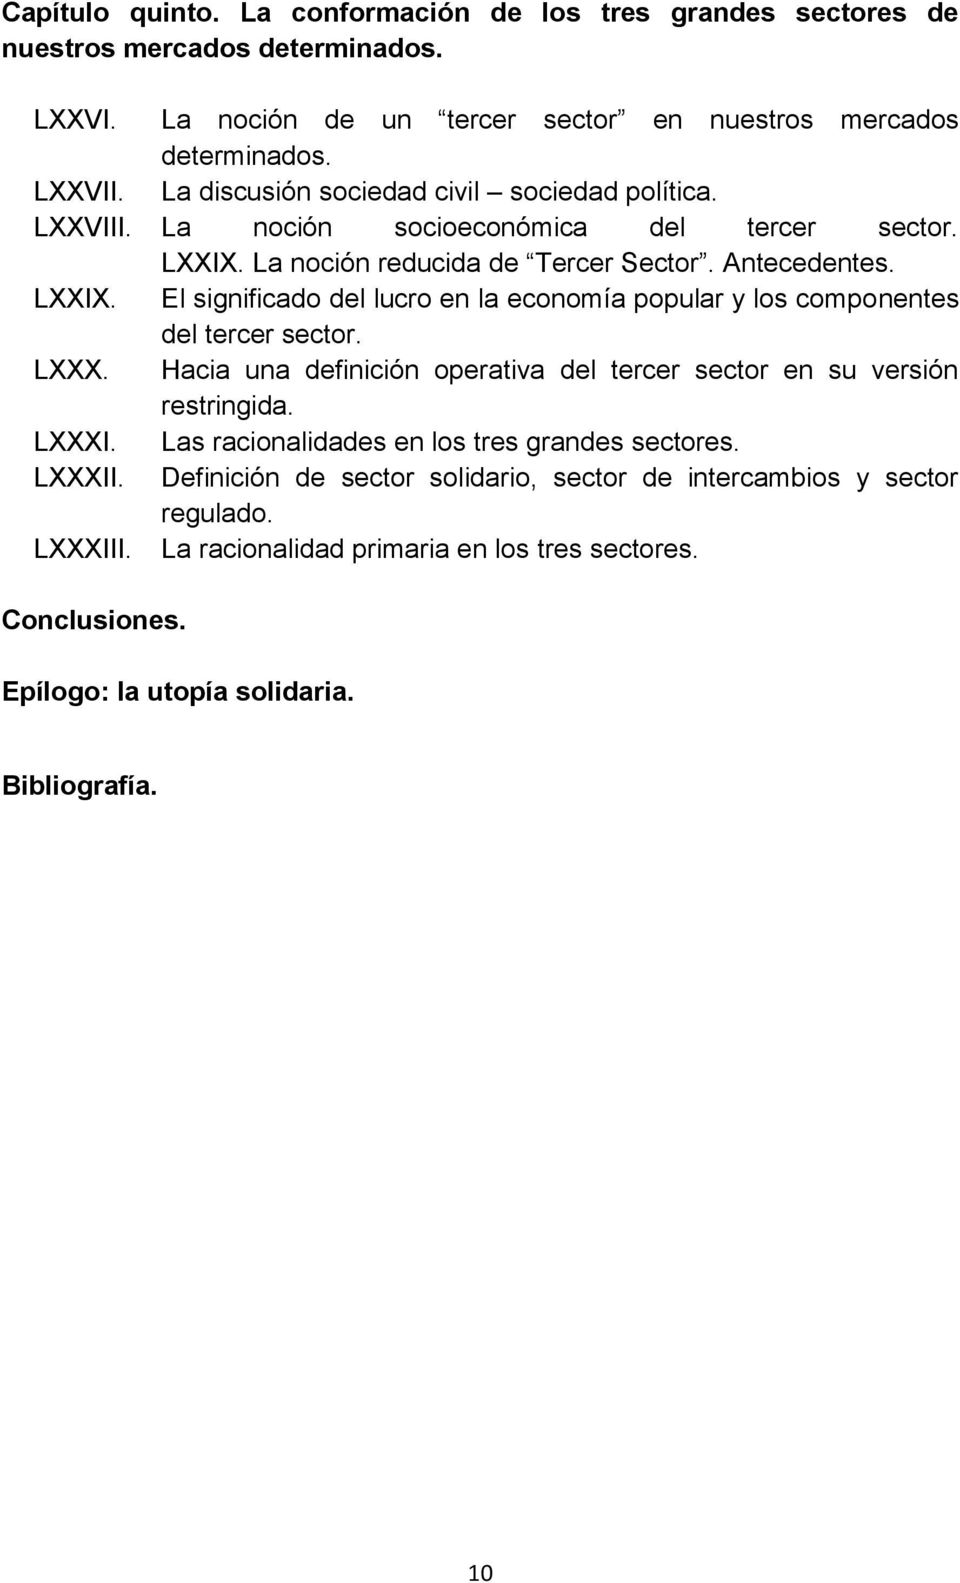 LXXX. Hacia una definición operativa del tercer sector en su versión restringida. LXXXI. Las racionalidades en los tres grandes sectores. LXXXII.